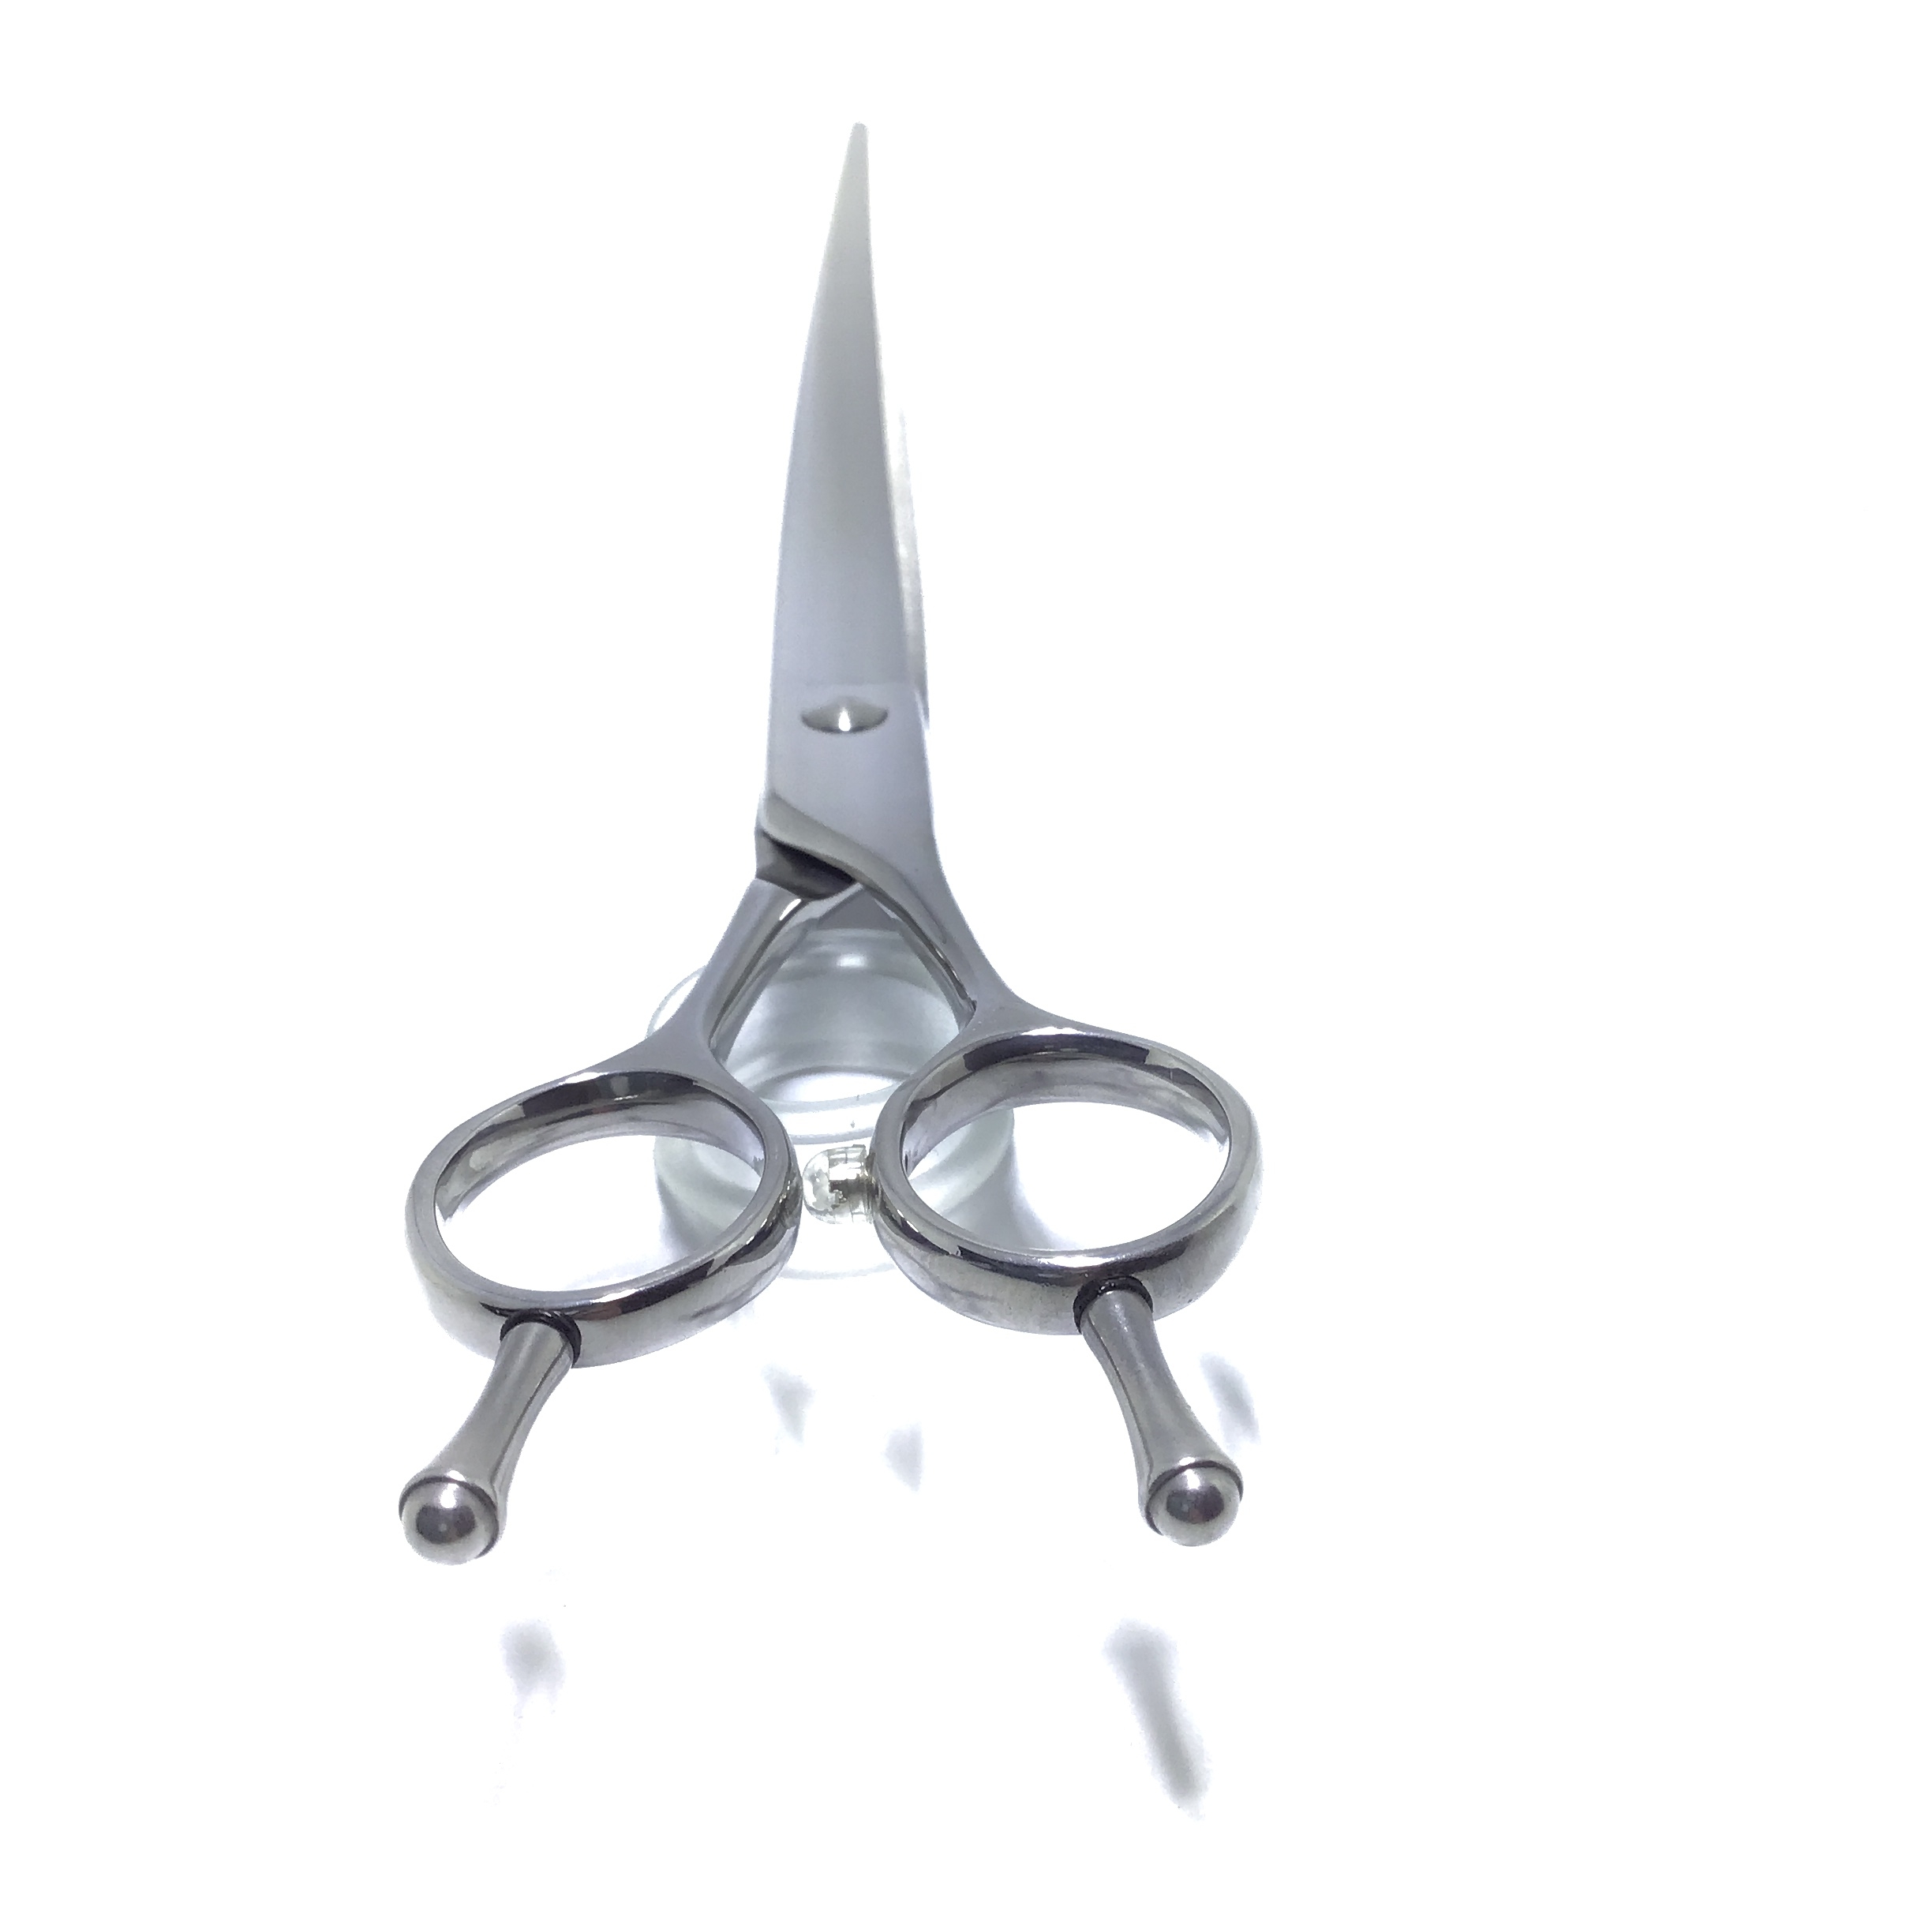 Curved Scissors X304C –